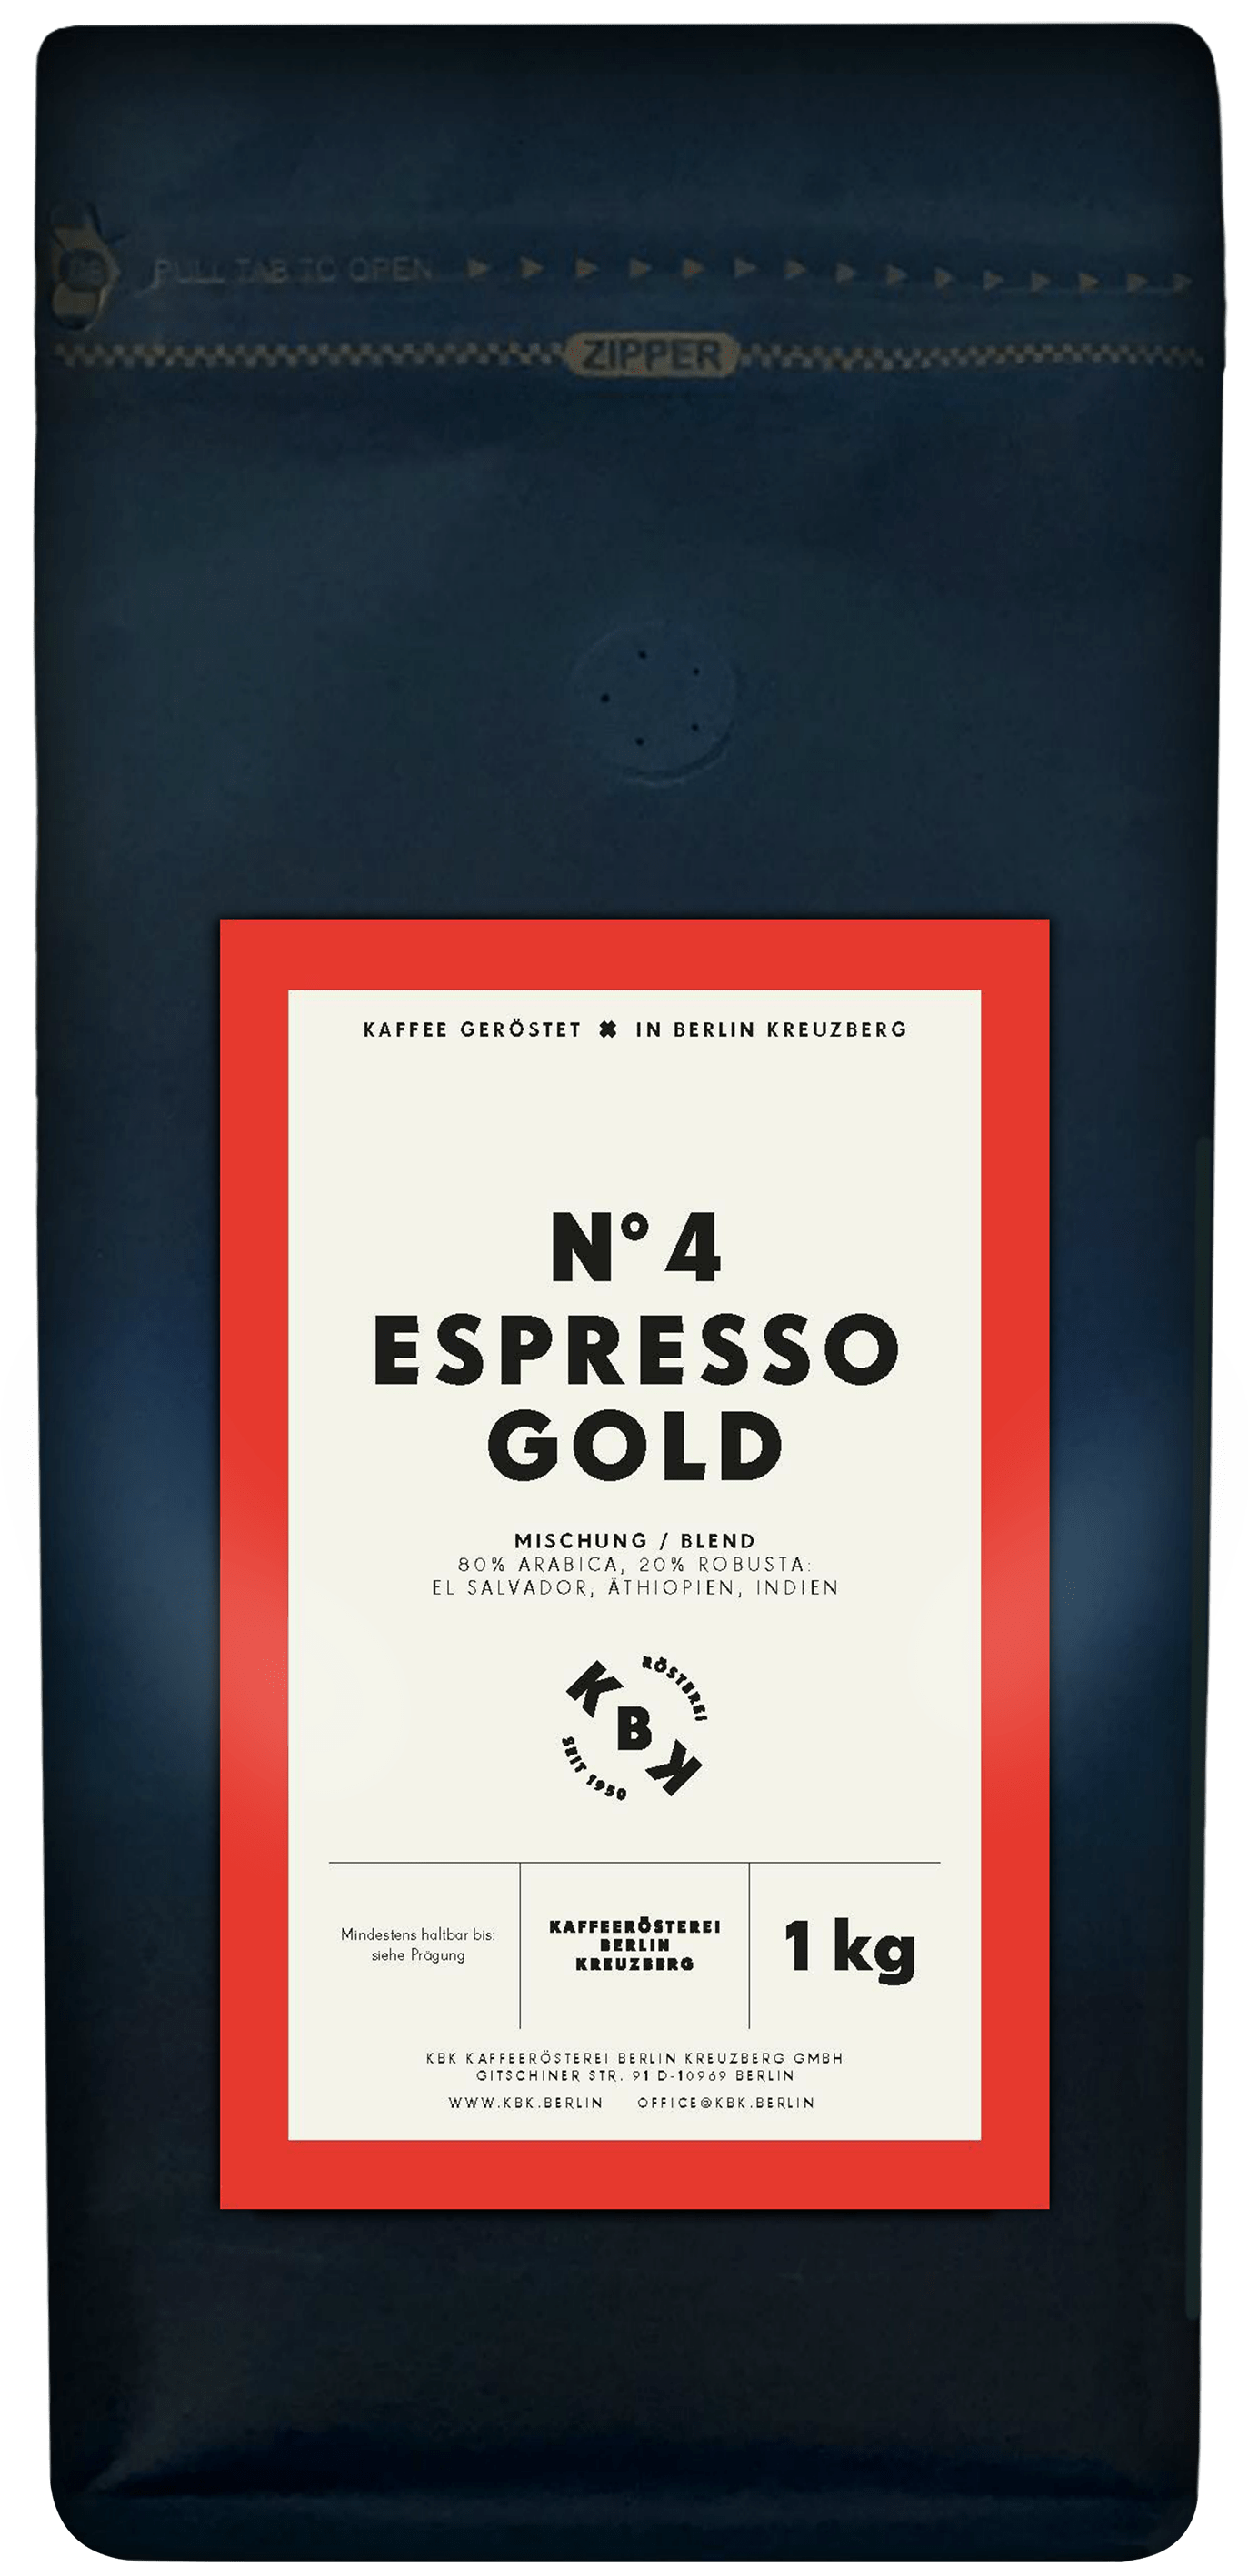 N°4 Espresso Gold